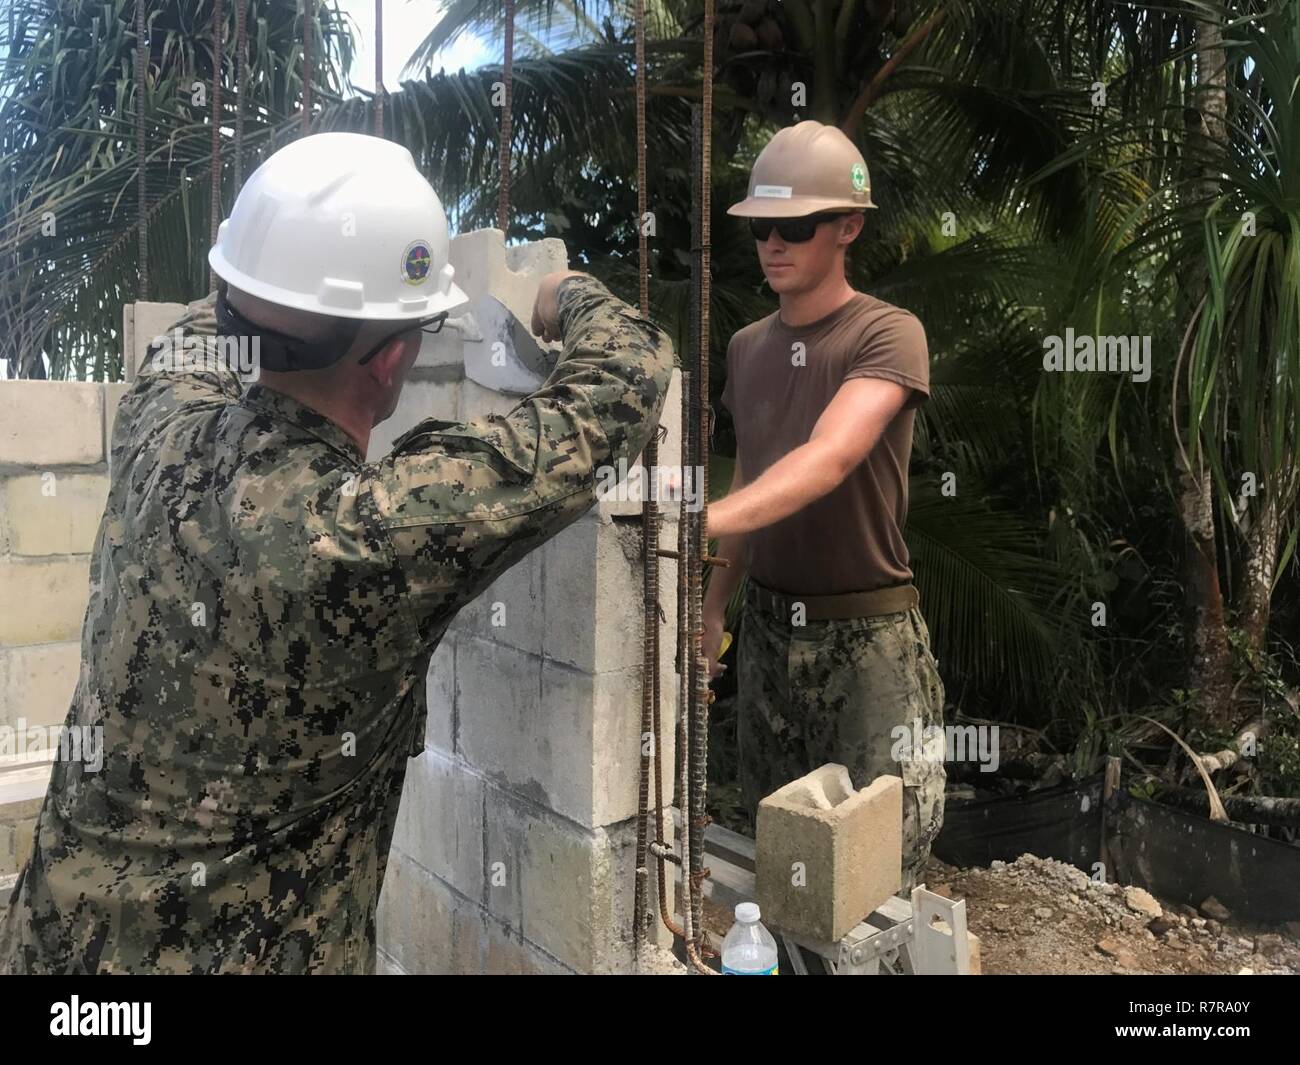 KOSRAE, Fédération de Micronésie (23 mars 2017) Builder Constructionman Lunders Skylar, droite, à partir de Fort Collins, Colorado, et le lieutenant Aaron Bell, un aumônier de la marine, des blocs d'unités de maçonnerie de béton tandis que la construction d'un mur extérieur de Walung Health Clinic à Kosrae, Fédération de Micronésie, le 23 mars 2017. Bataillon de construction Mobile naval (NMCB) 1 est la construction d'une nouvelle clinique de soins de santé dans le village de Walung à Kosrae. 1 NMCB est déployée avant d'exécuter la construction, l'aide humanitaire et l'aide étrangère, les opérations spéciales des services de soutien au combat, et le théâtre de la coopération en matière de sécurité dans supp Banque D'Images